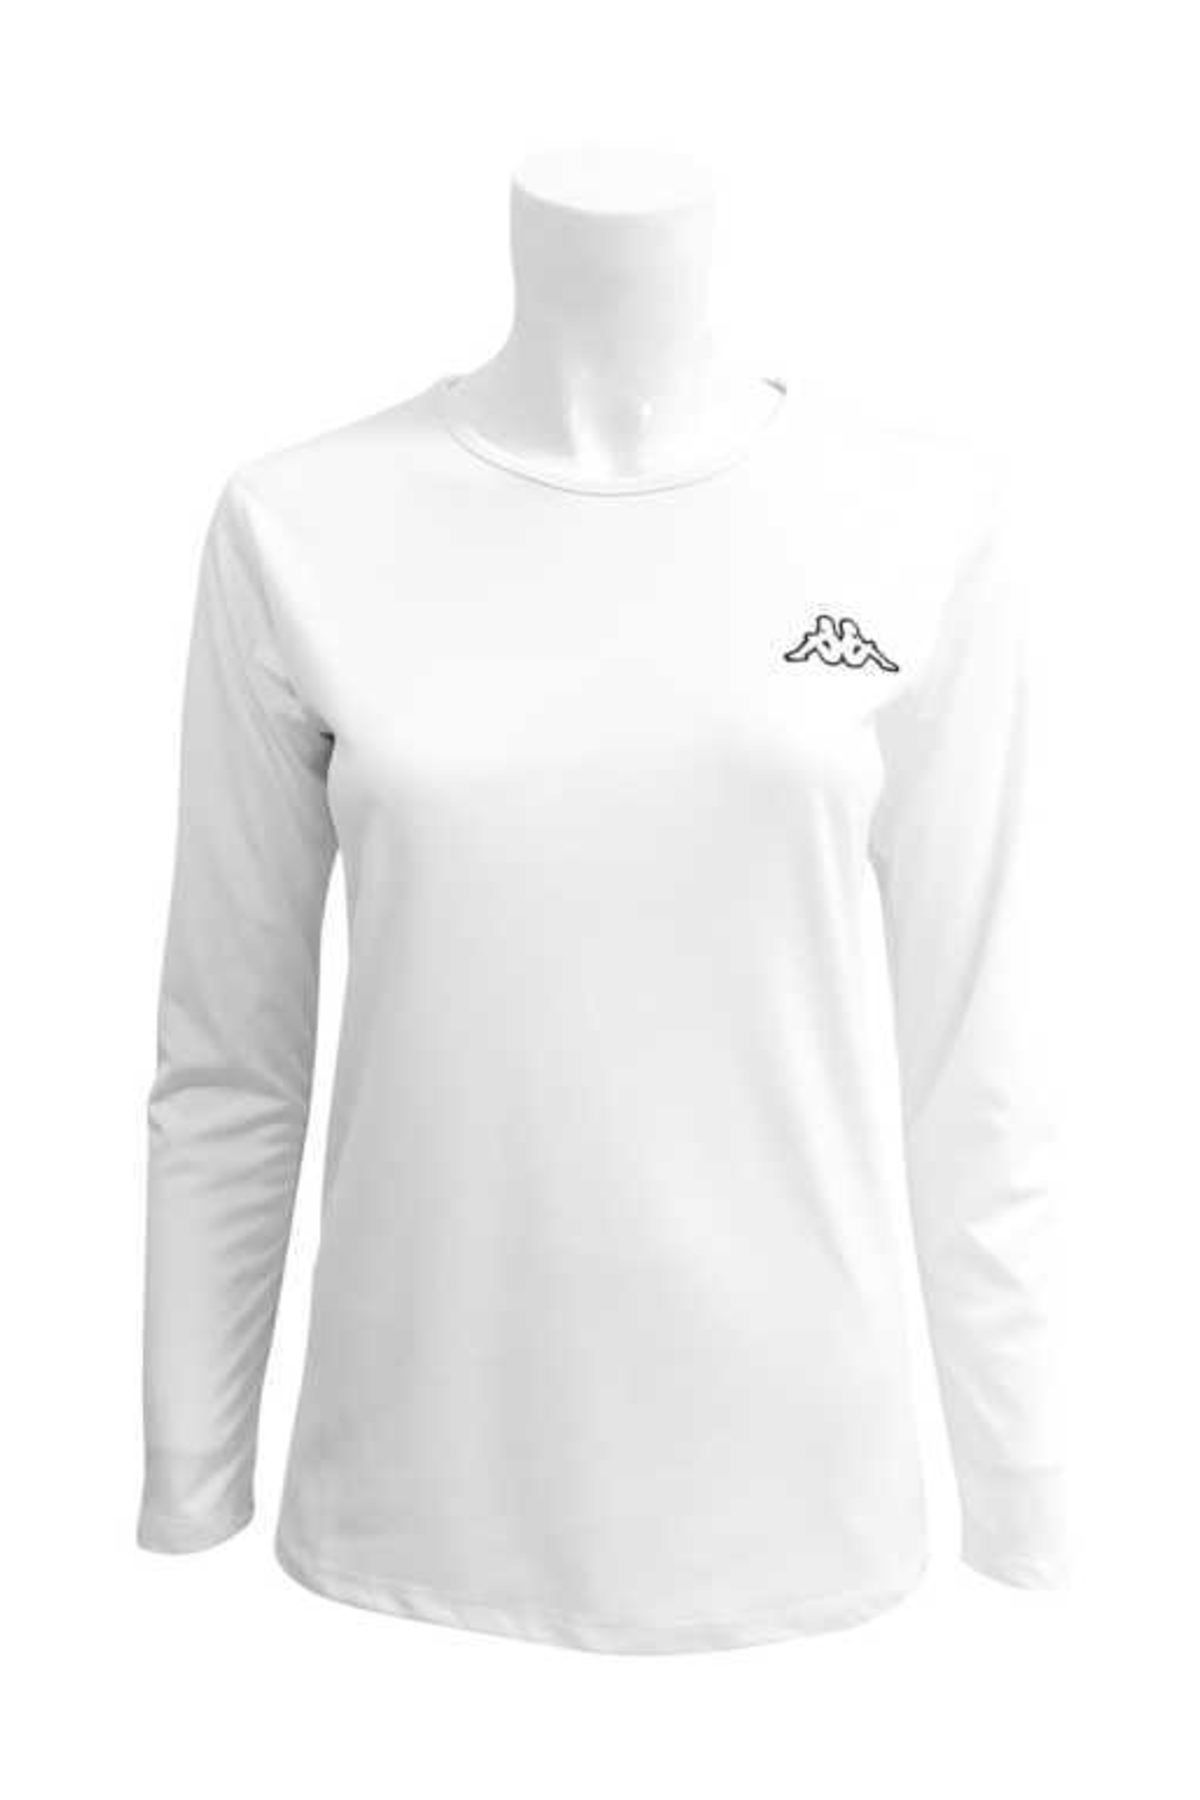 Kappa 3036db0 Kadın Polyester T-shirt Uzun Kollu Tarsı